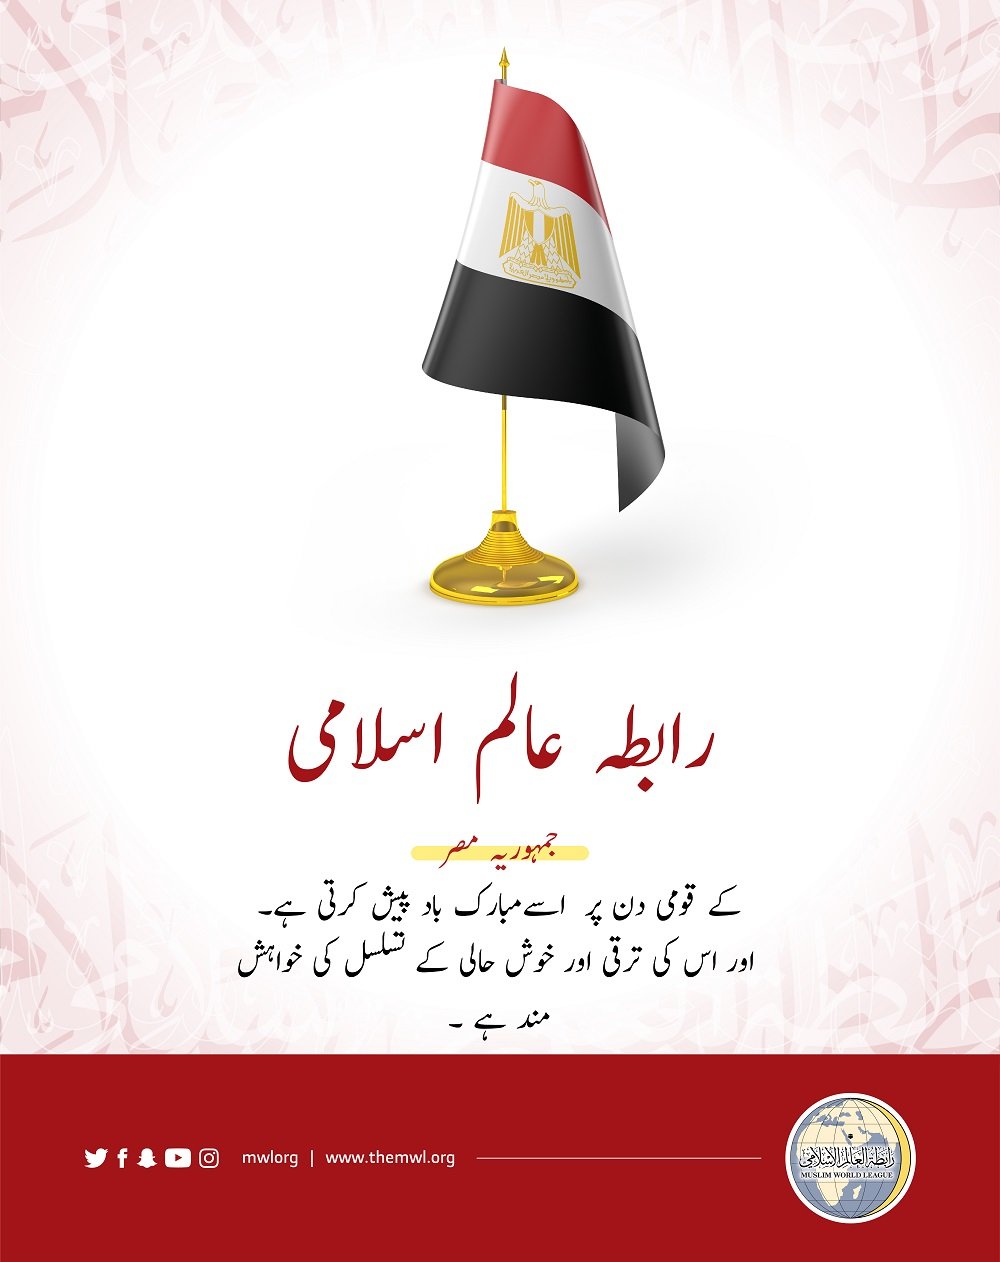 رابطہ عالم اسلامی کا مصر کے قومی دن کے موقع پر مبارک باد کا پیغام: